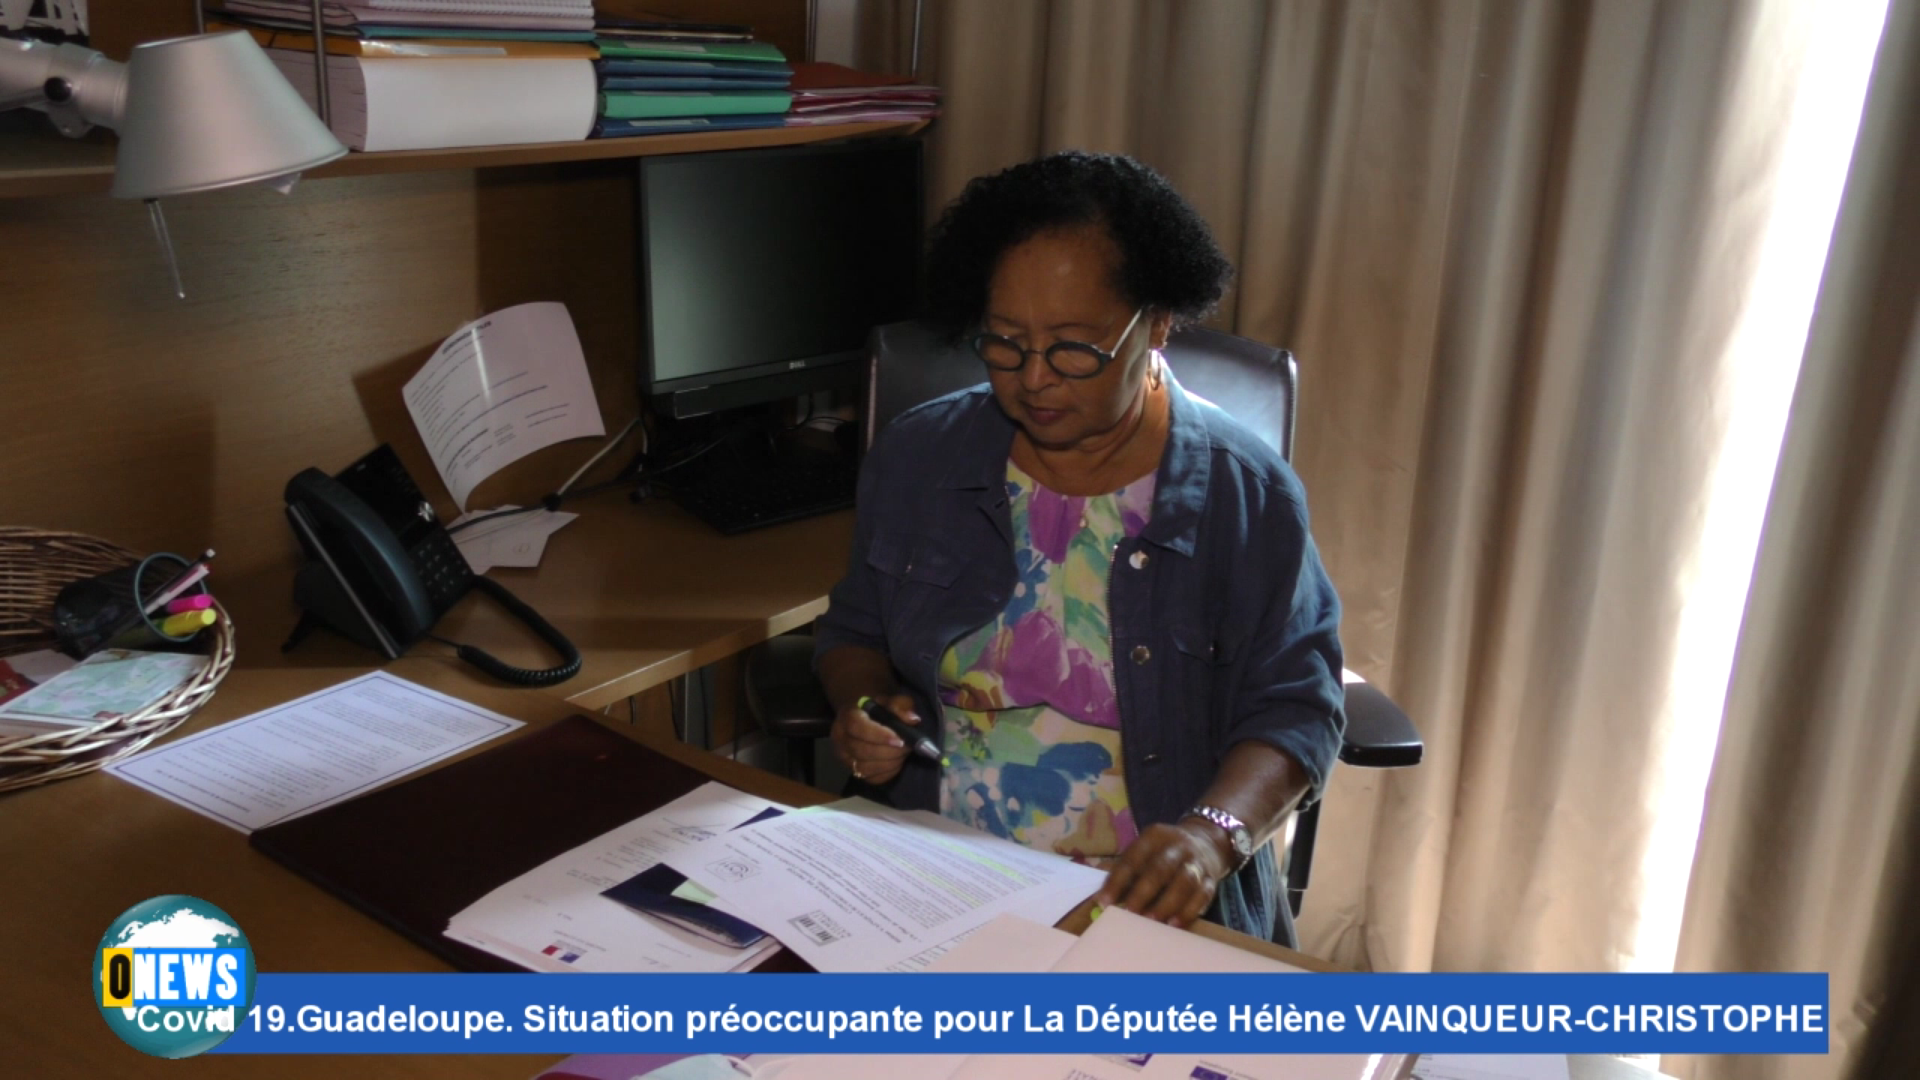 [Vidéo] Covid 19.Guadeloupe. Situation préoccupante pour La Députée Hélène VAINQUEUR-CHRISTOPHE